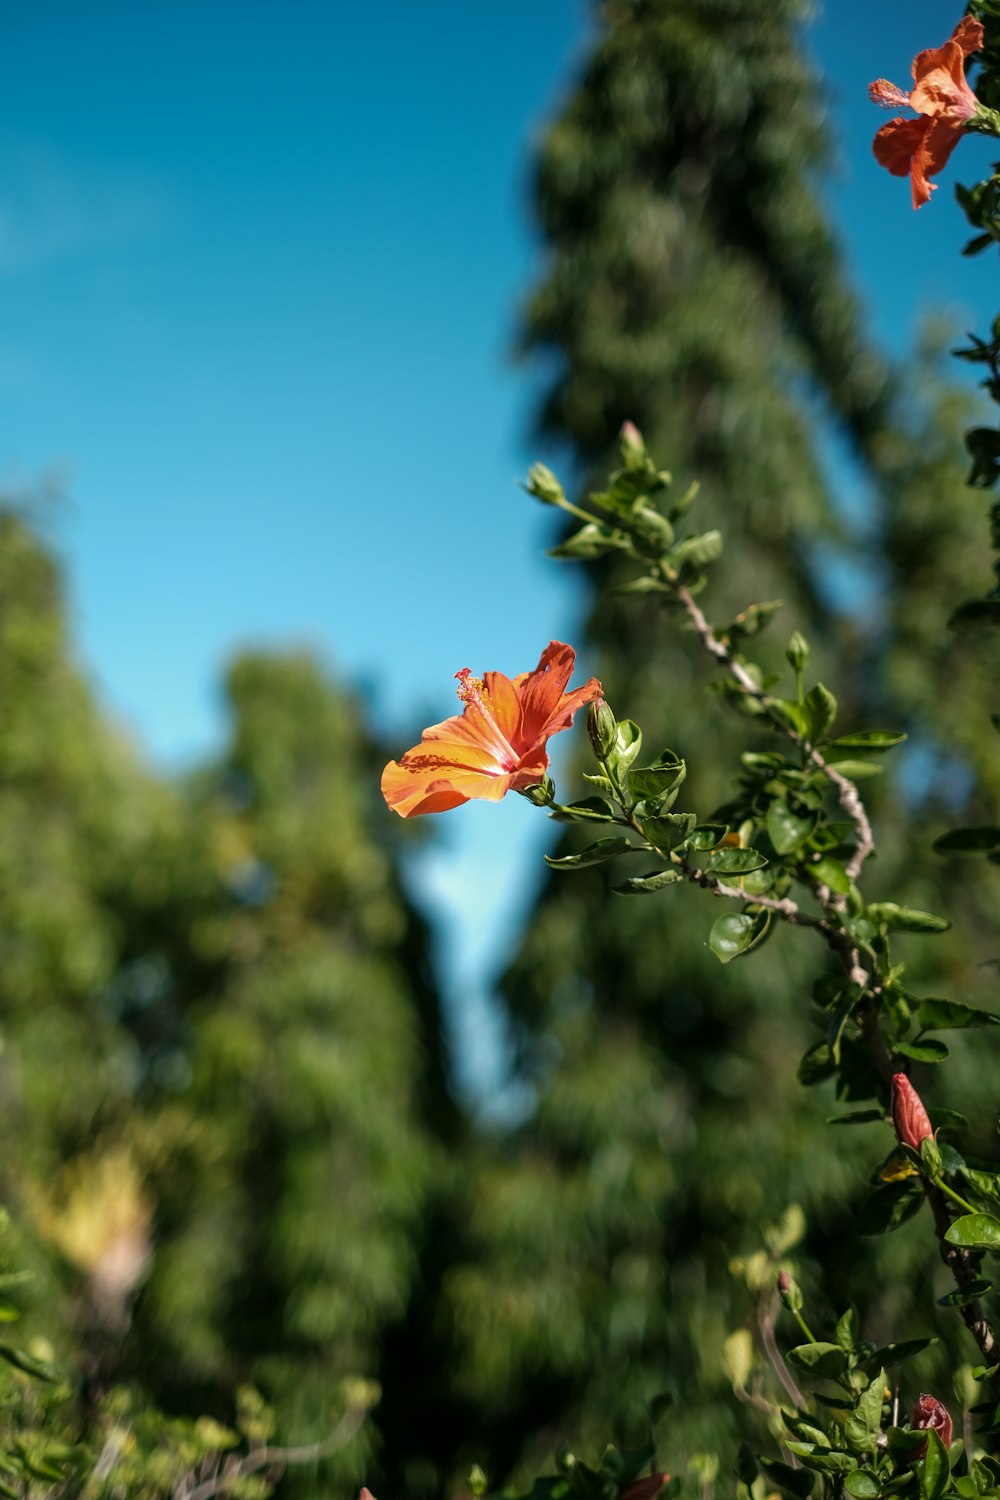 a single orange flower on a tree branch